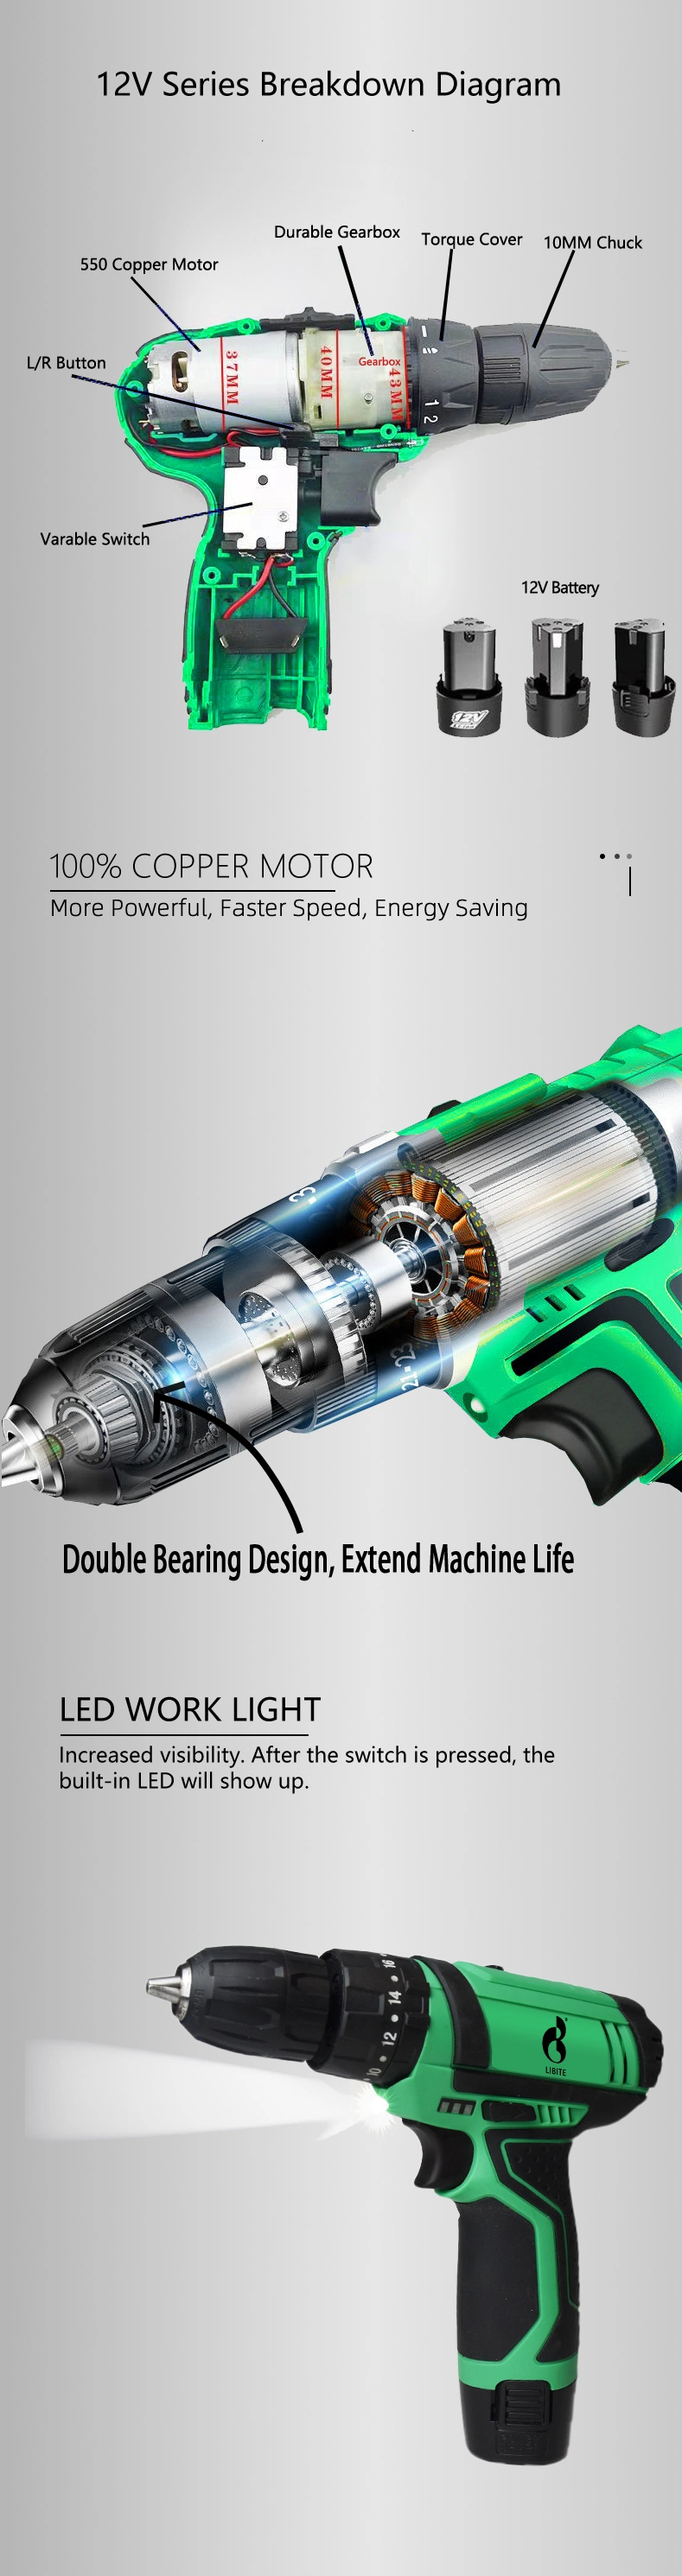 Libite 12V 20V Li-ion Mini Screwdriver Lithium Battery Cordless Impact Drill